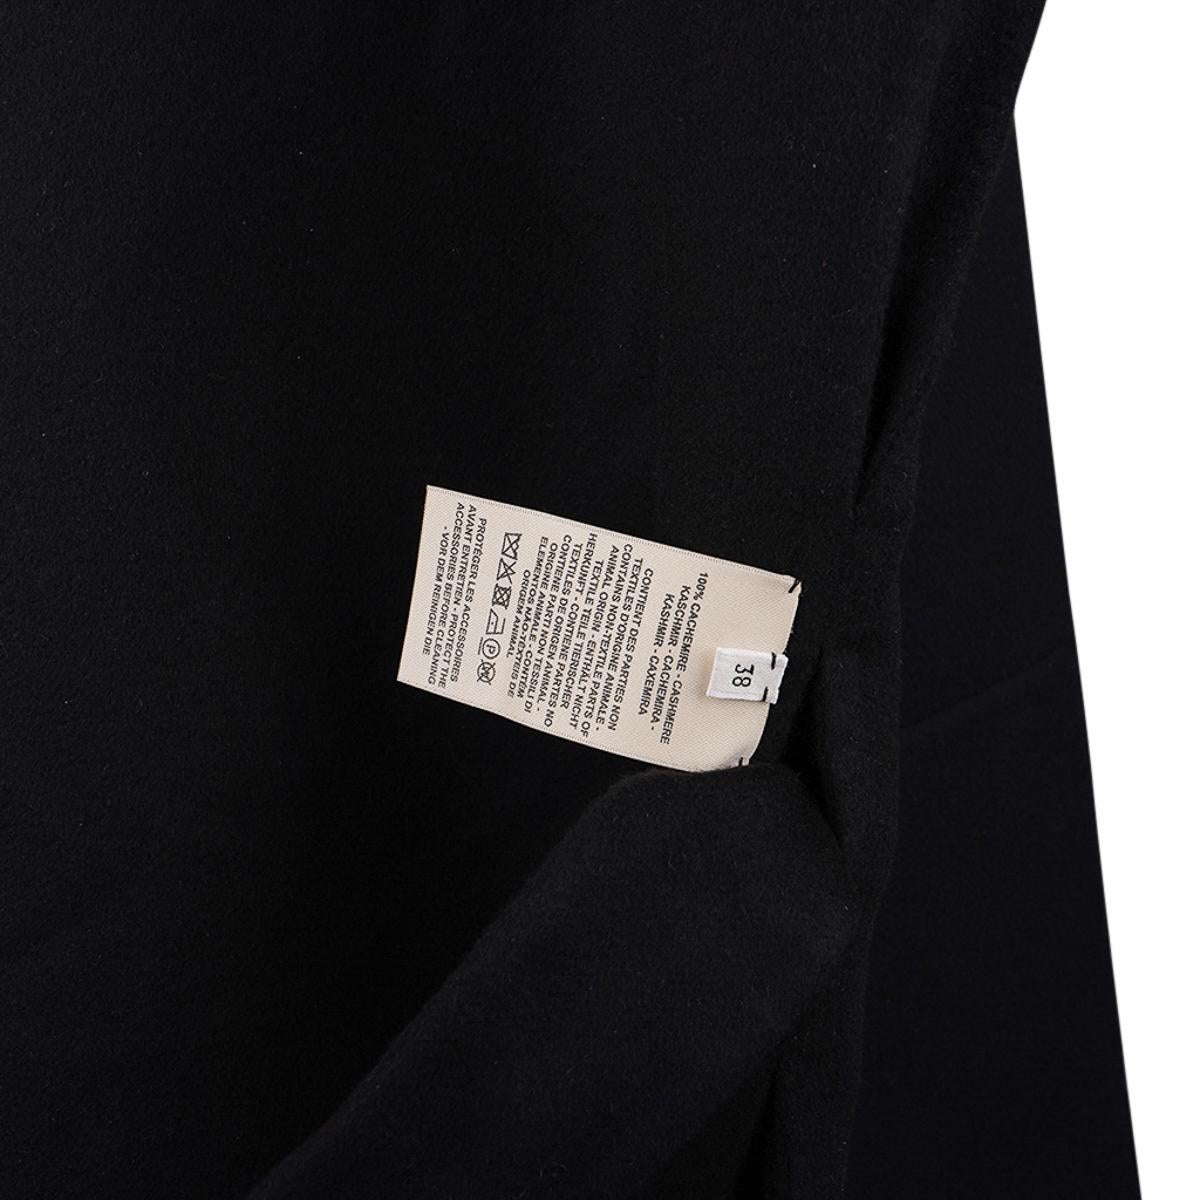 Hermes Short Vest Black Zip Double Face Cashmere 38 / 6 For Sale 10